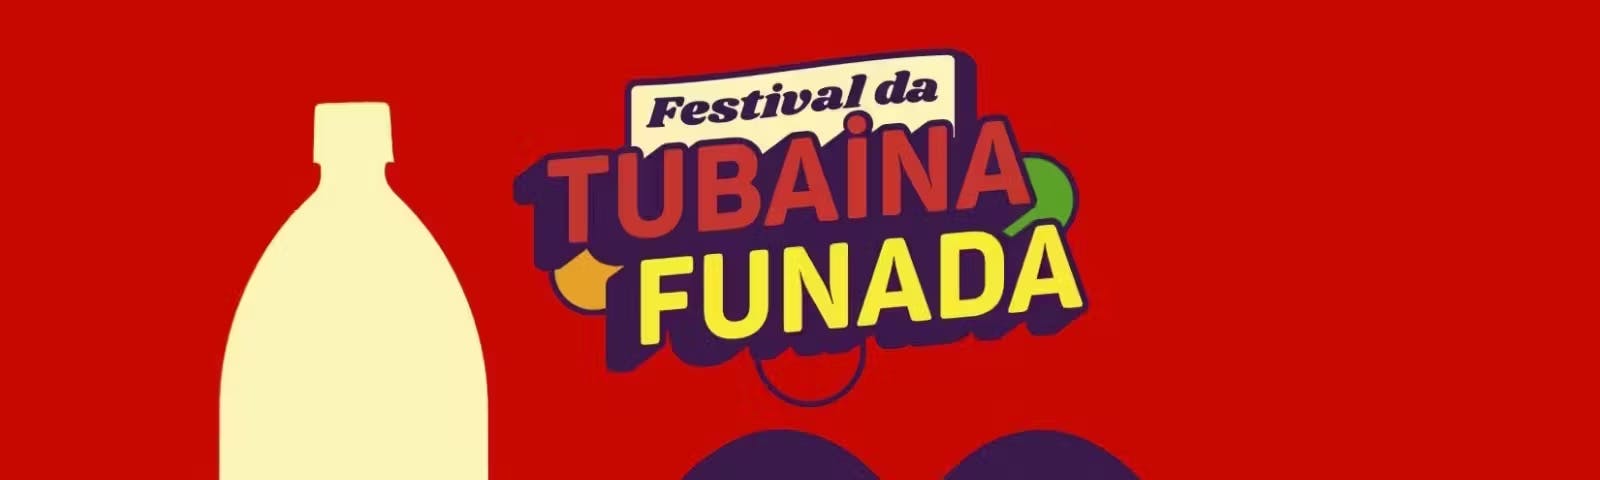 Imagem do Festival da Tubaína Funada